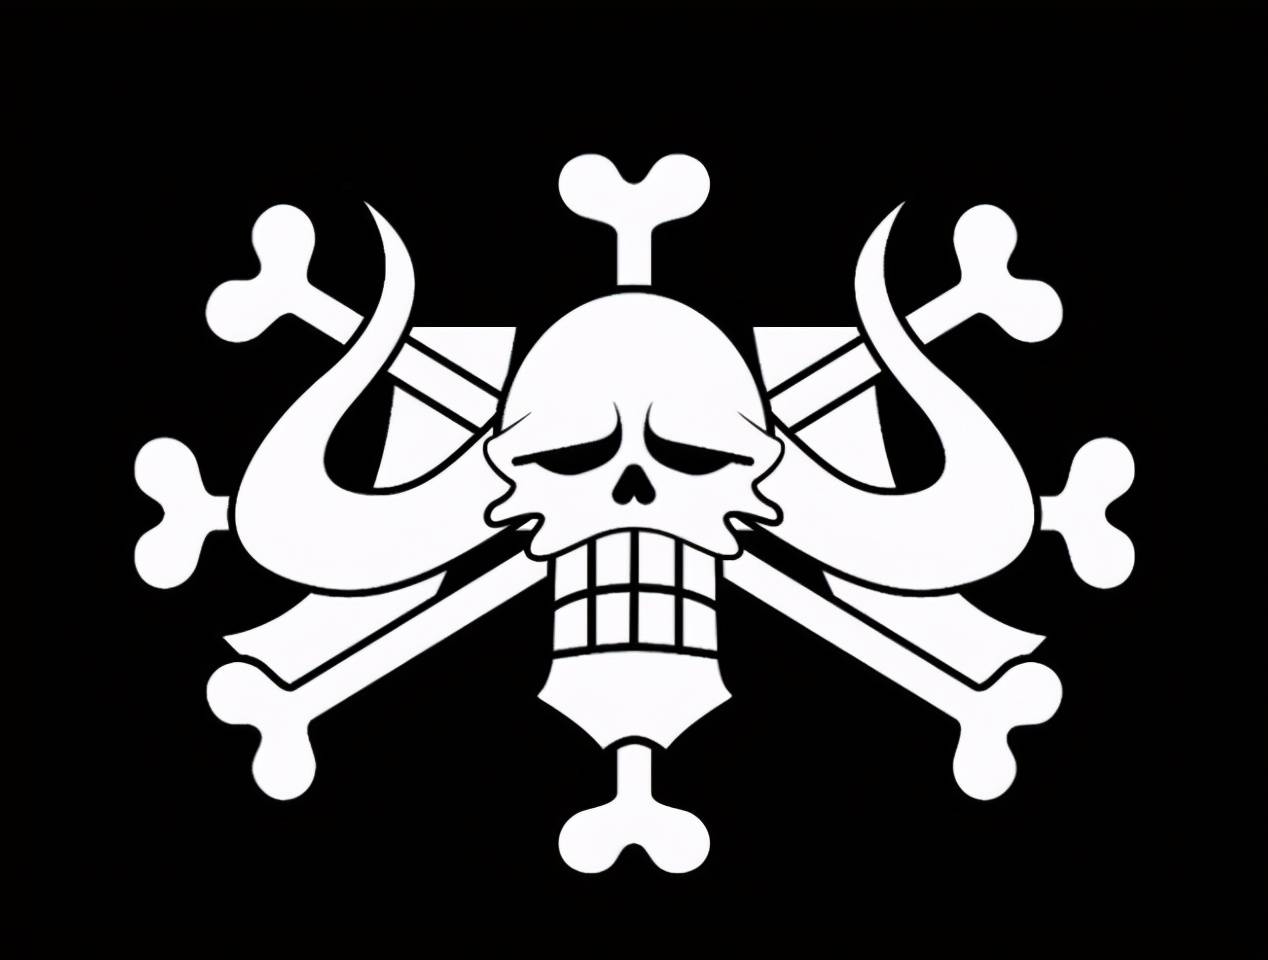 原创揭秘海贼王中的六皇海贼旗的寓意你全都了解吗